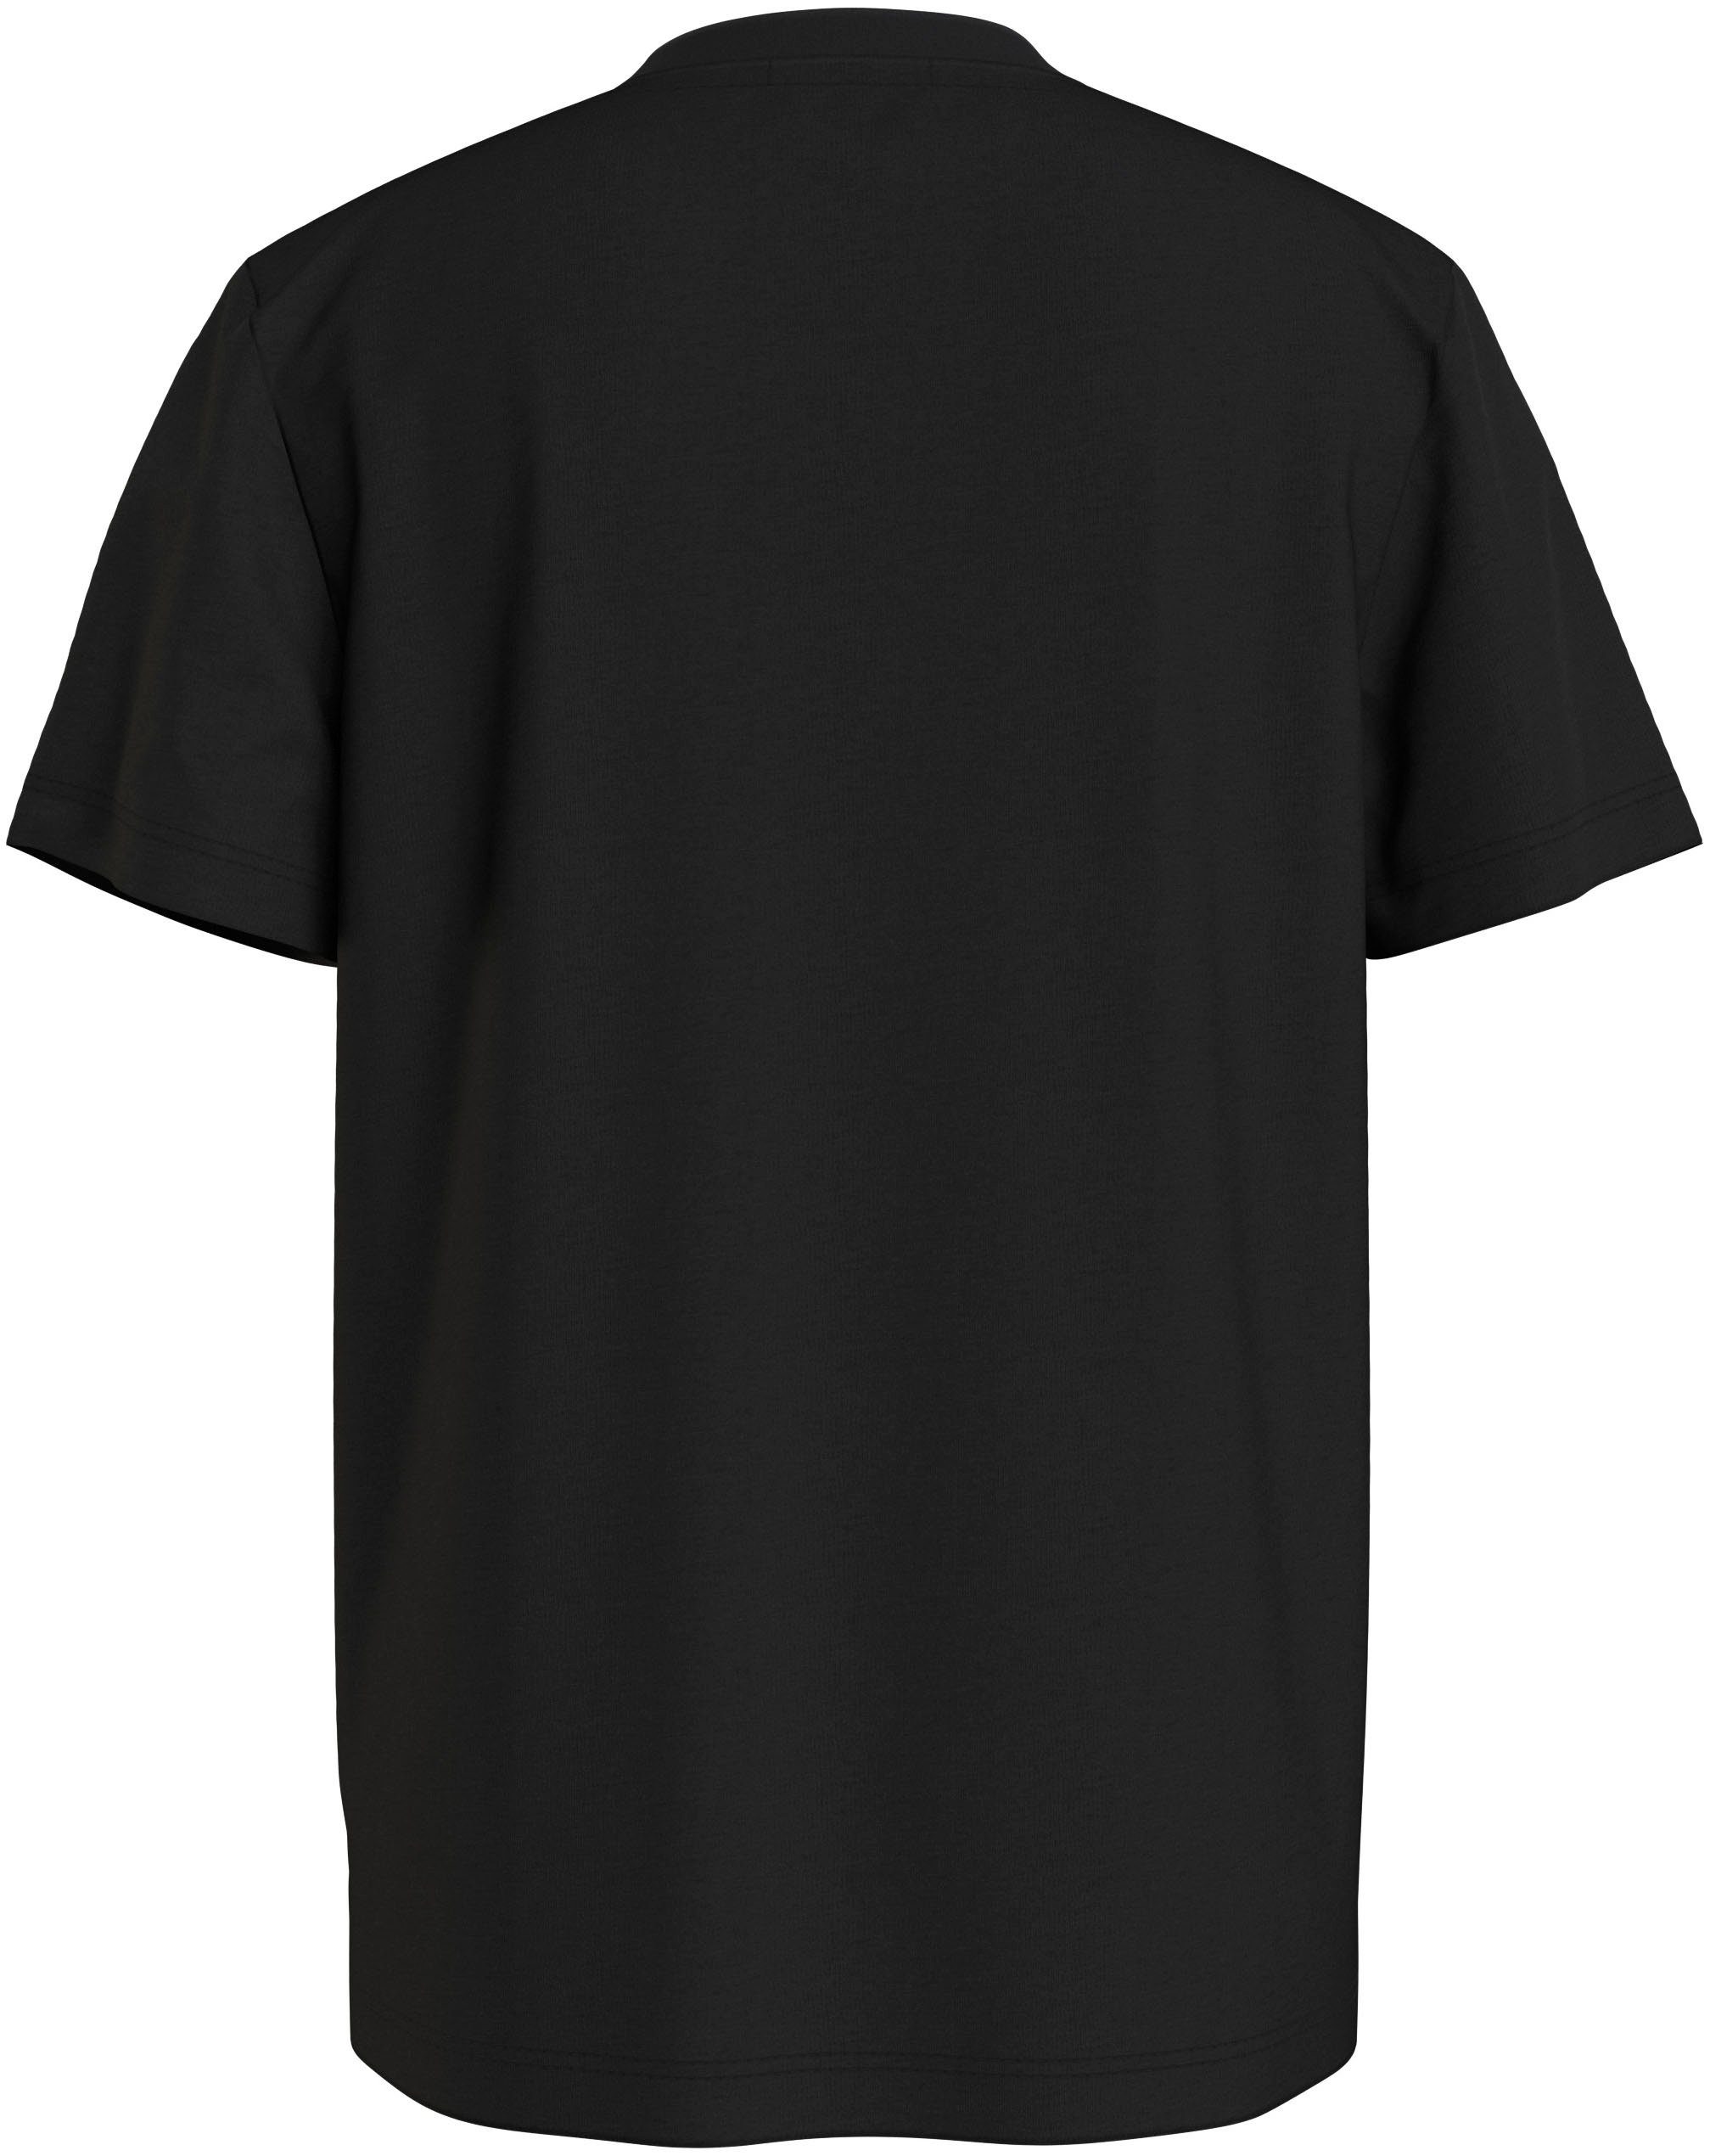 SS Klein Jeans Calvin Black CK Ck T-SHIRT T-Shirt MONOGRAM